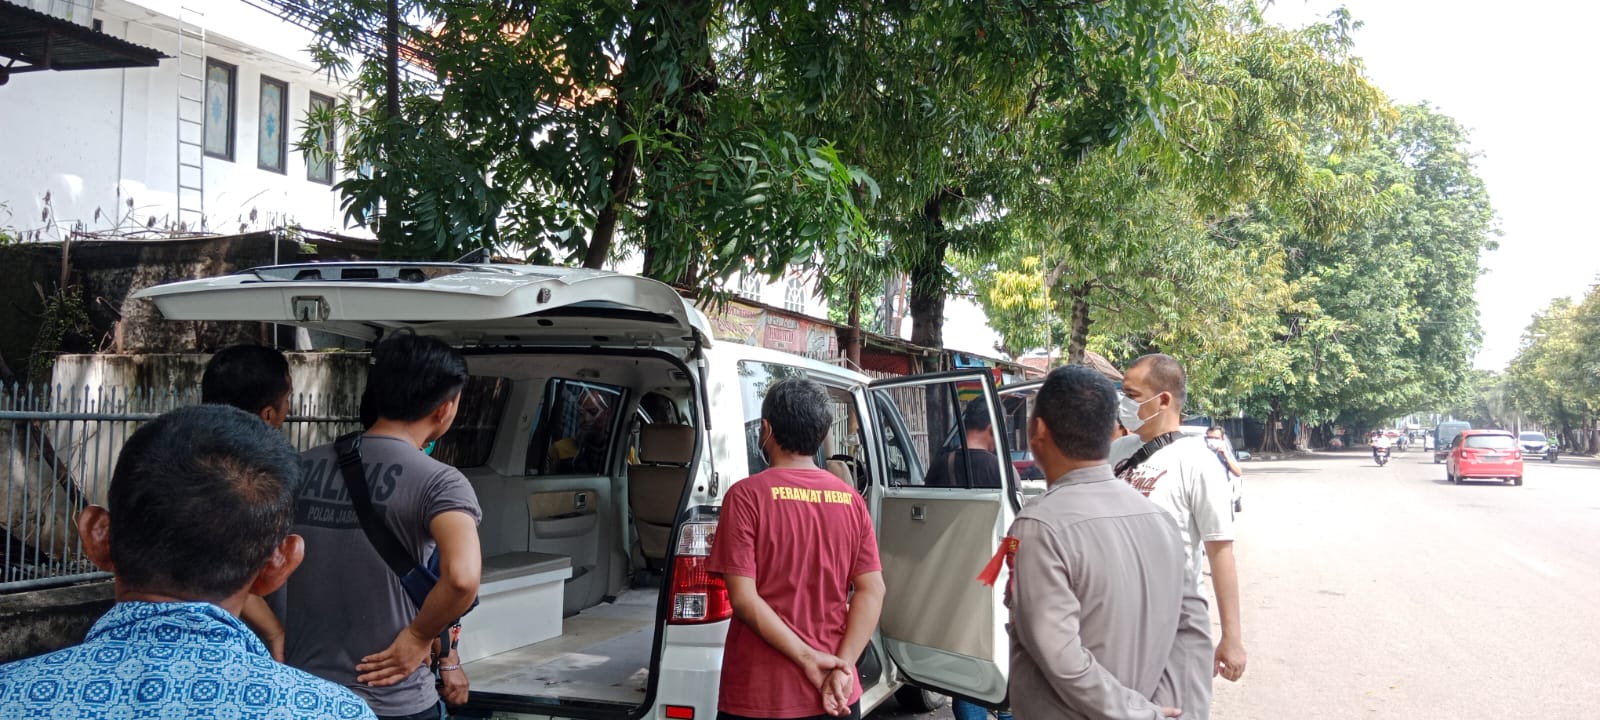 Ambulans Puskesmas Sindanglaut Ditemukan di Jl Yos Sudarso Kota Cirebon, Begini Penampakannya